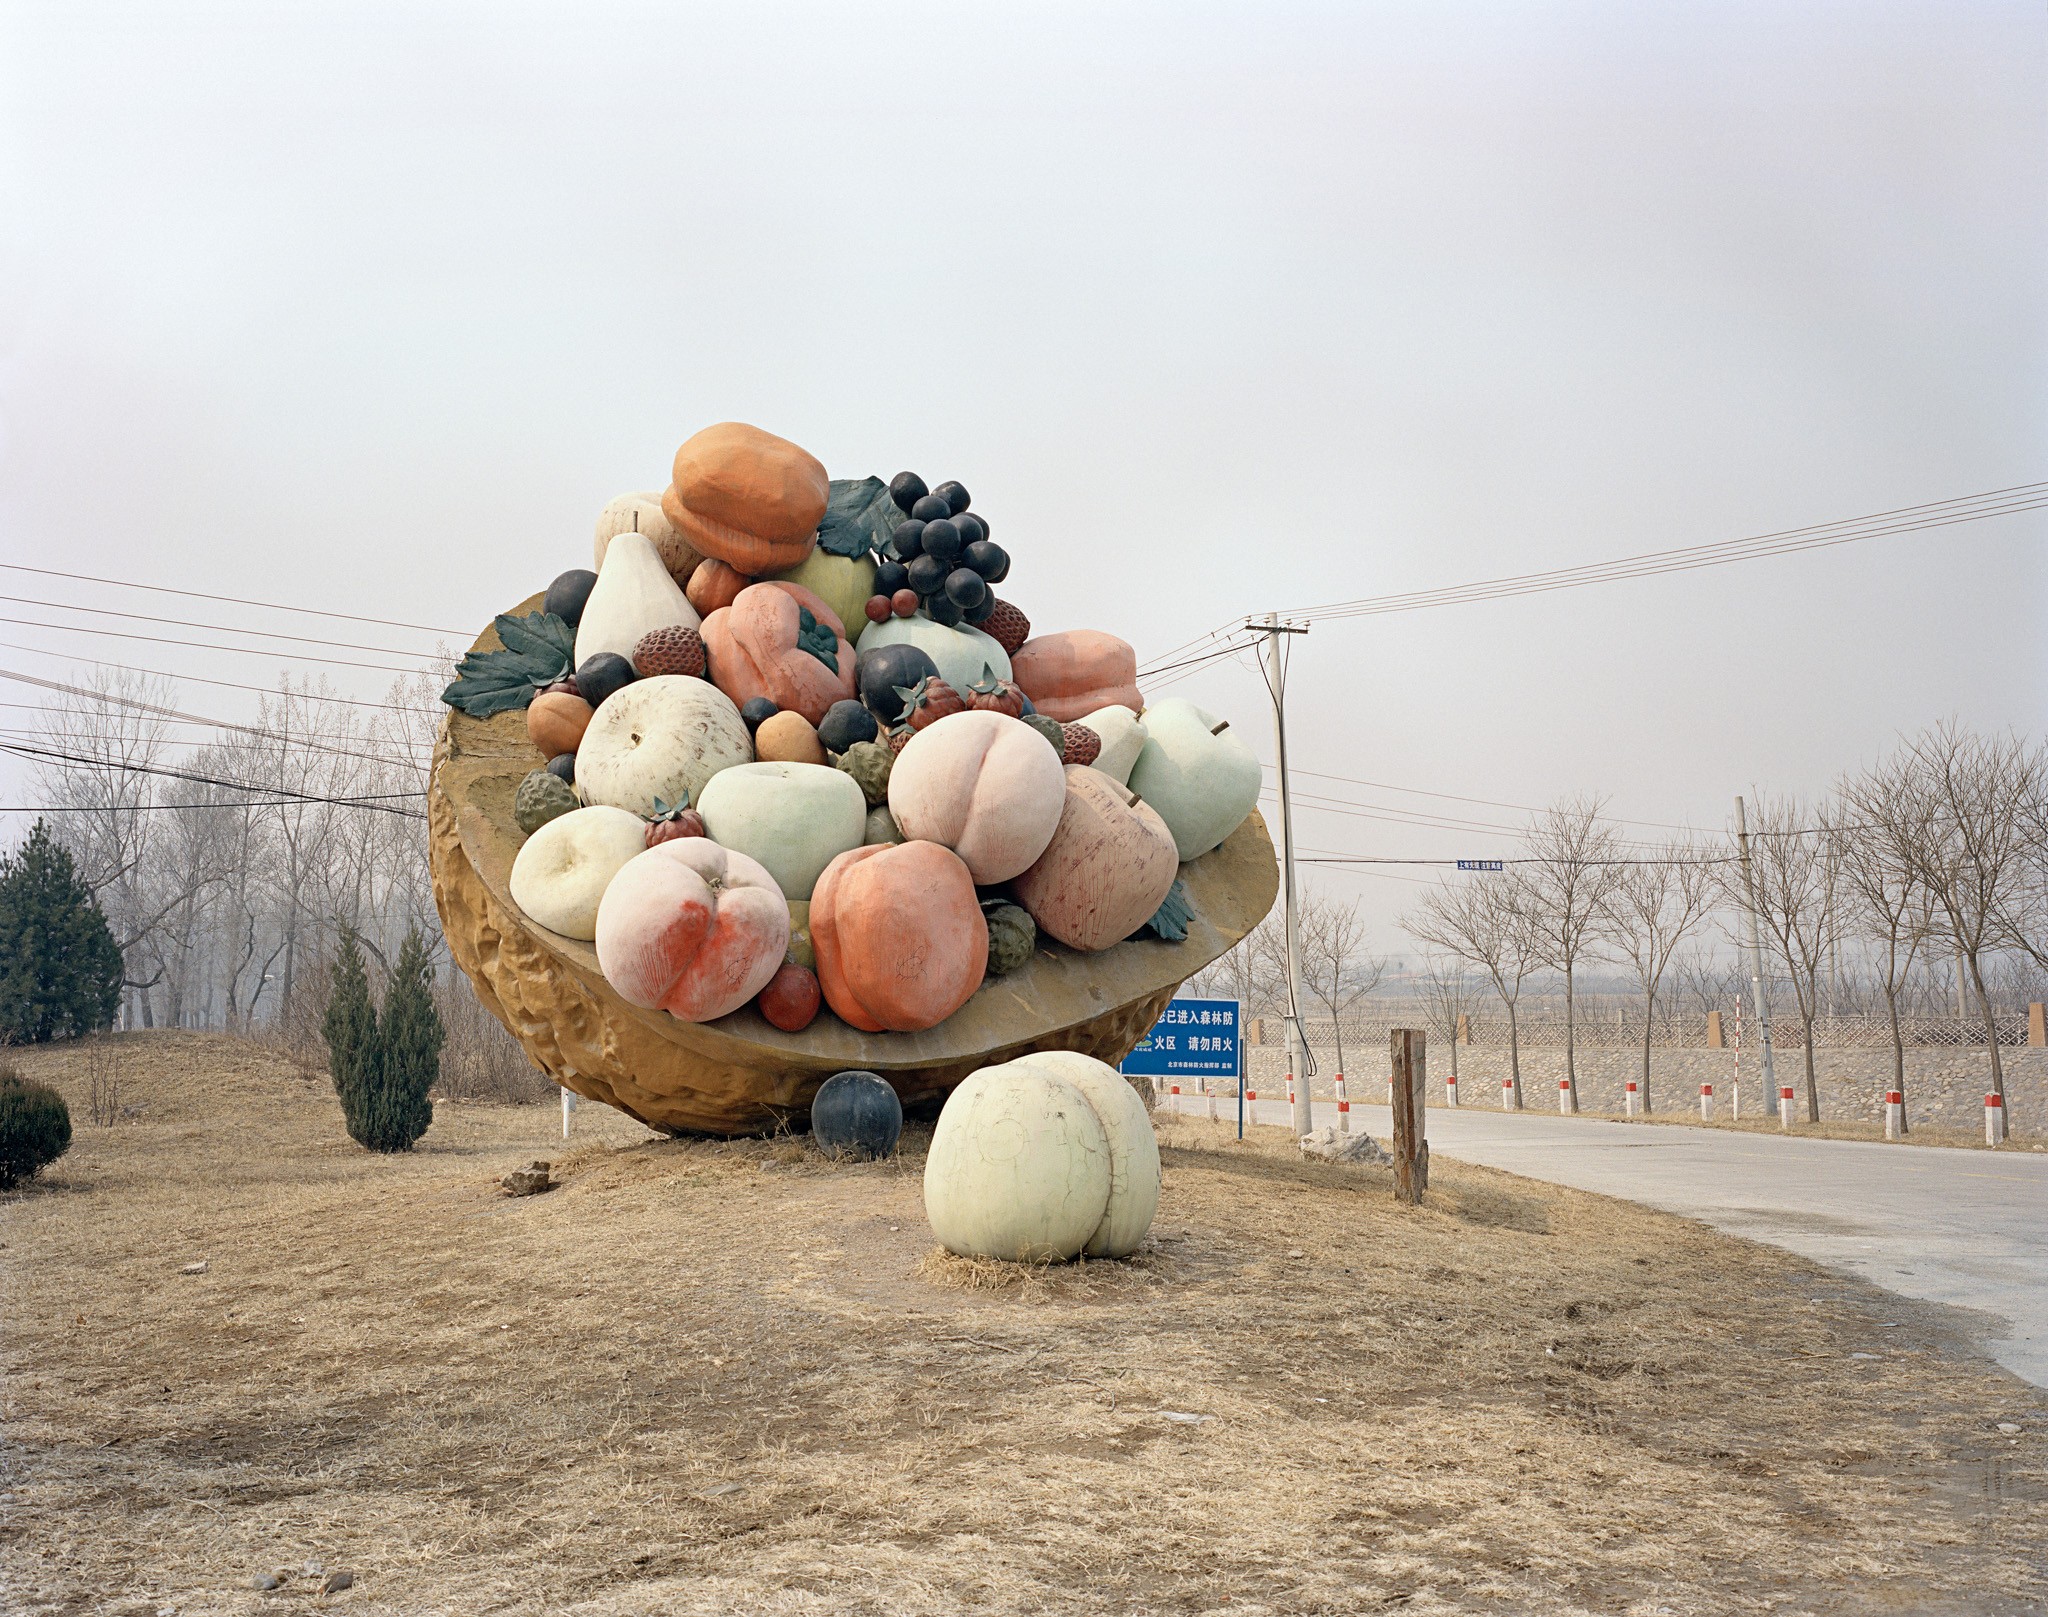 Photographie de la série Chinese Fun par Stefano Cerio. La photographie montre un panier de fruit géant au milieu d'un parc, le ciel et gris et l'impression d'inquiétante étrangeté est manifeste.